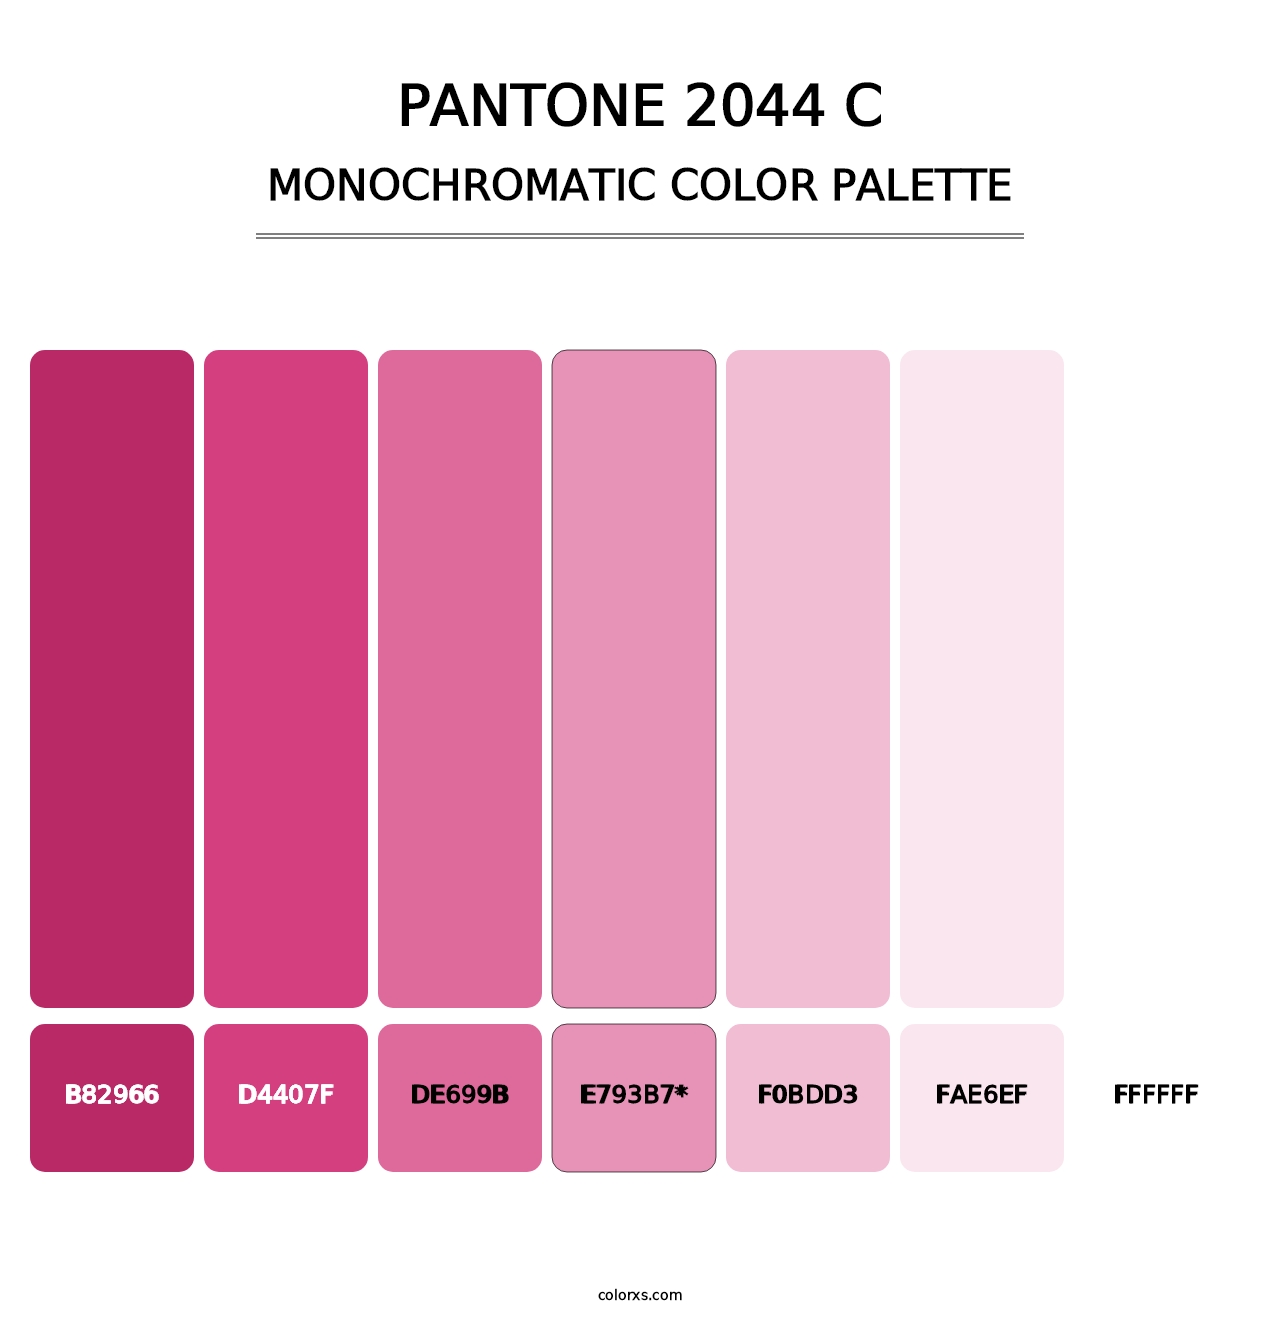 PANTONE 2044 C - Monochromatic Color Palette